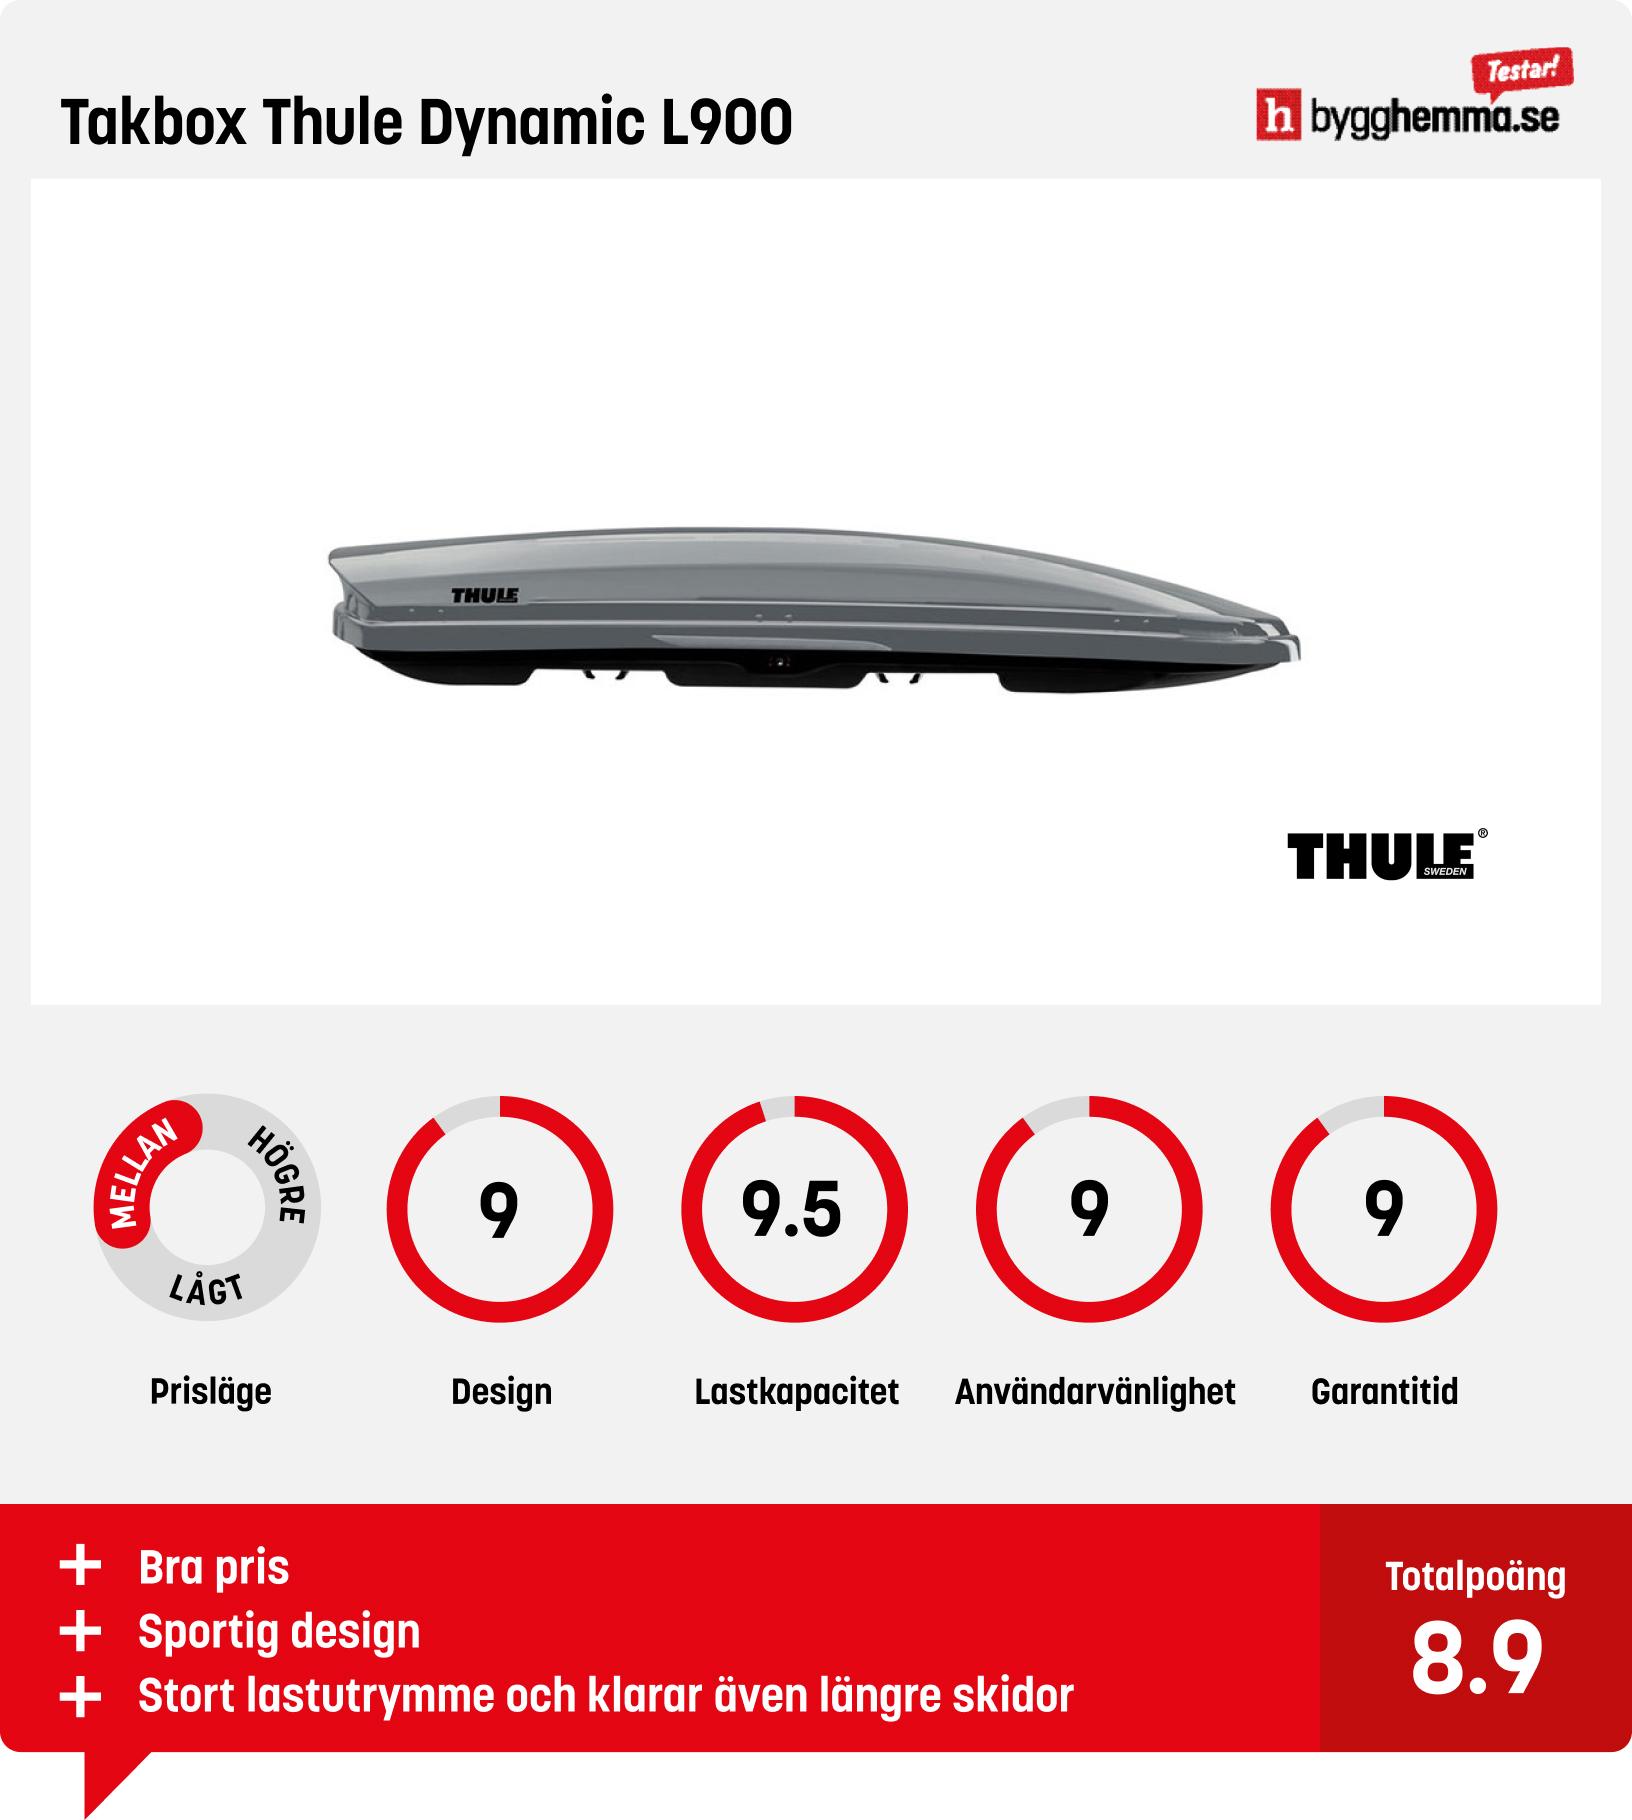 Takbox bäst i test - Takbox Thule Dynamic L900